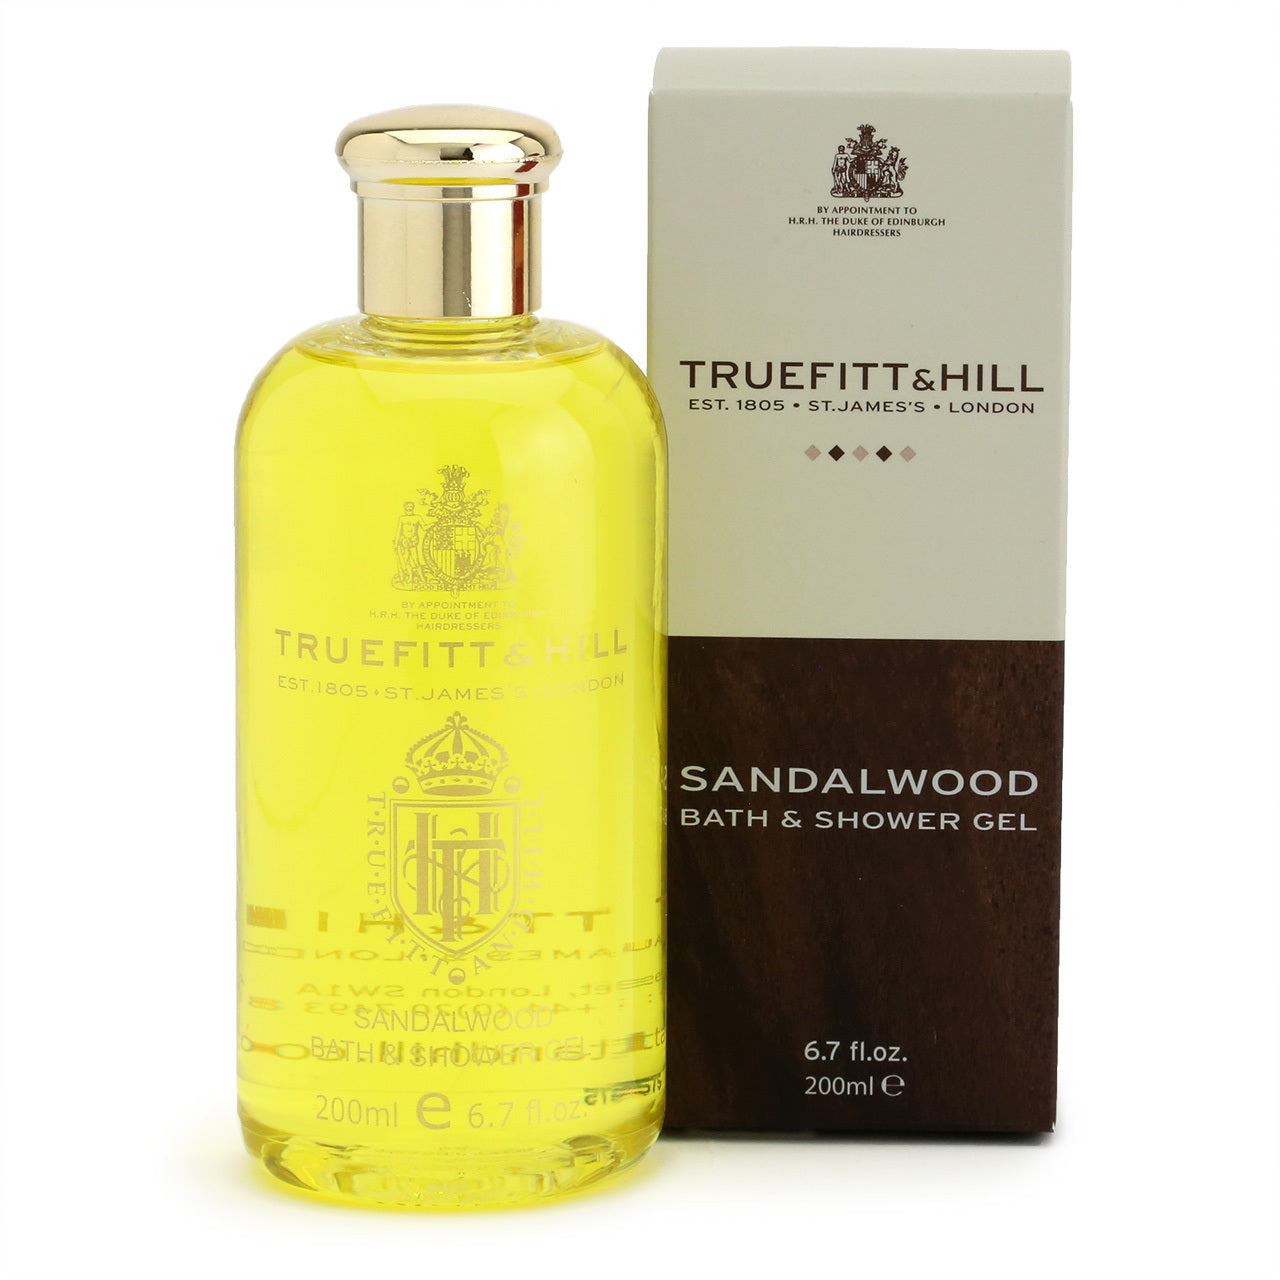 Truefitt & Hill Bath and Shower Gel 200ml - Sandalwood